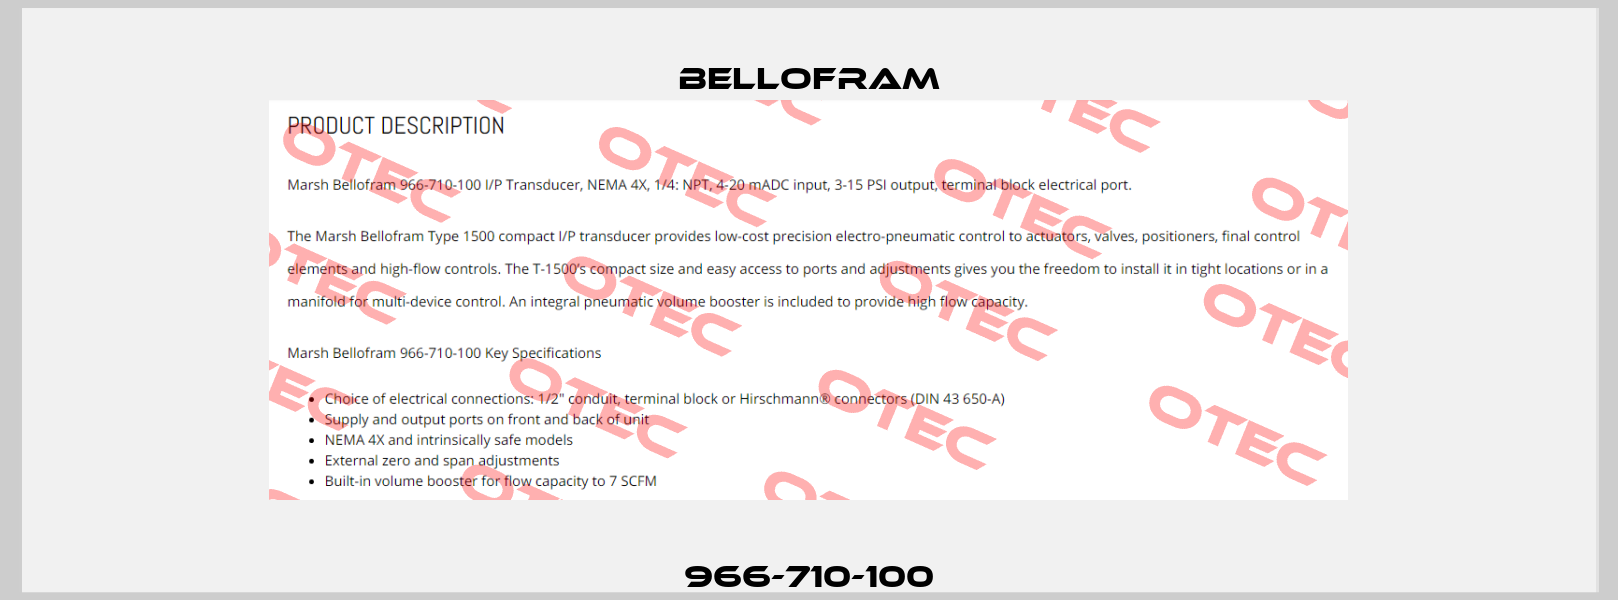 966-710-100 Bellofram